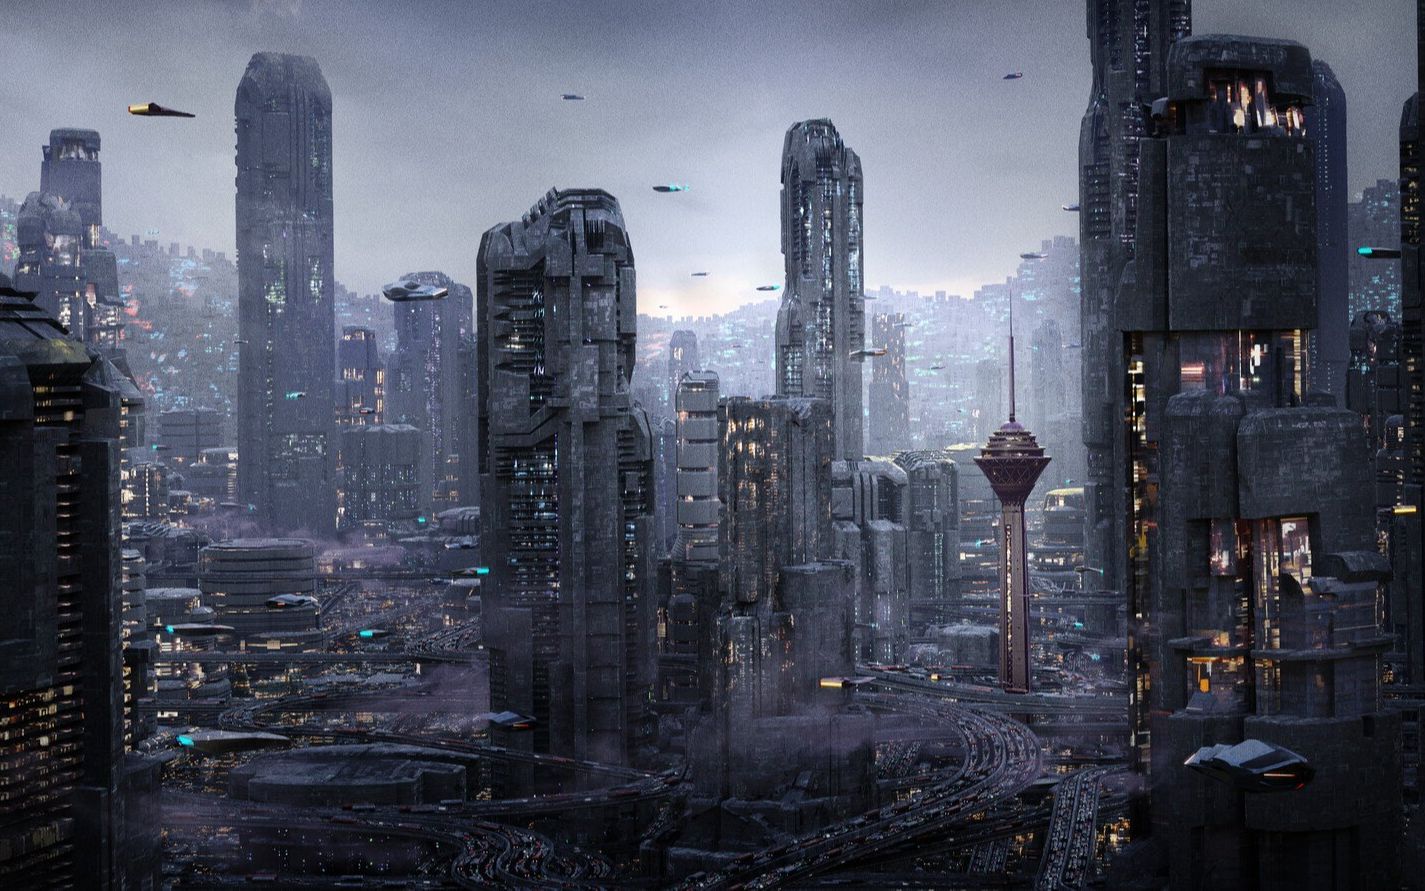 【blender工程】德黑兰 2072未来科幻城市场景